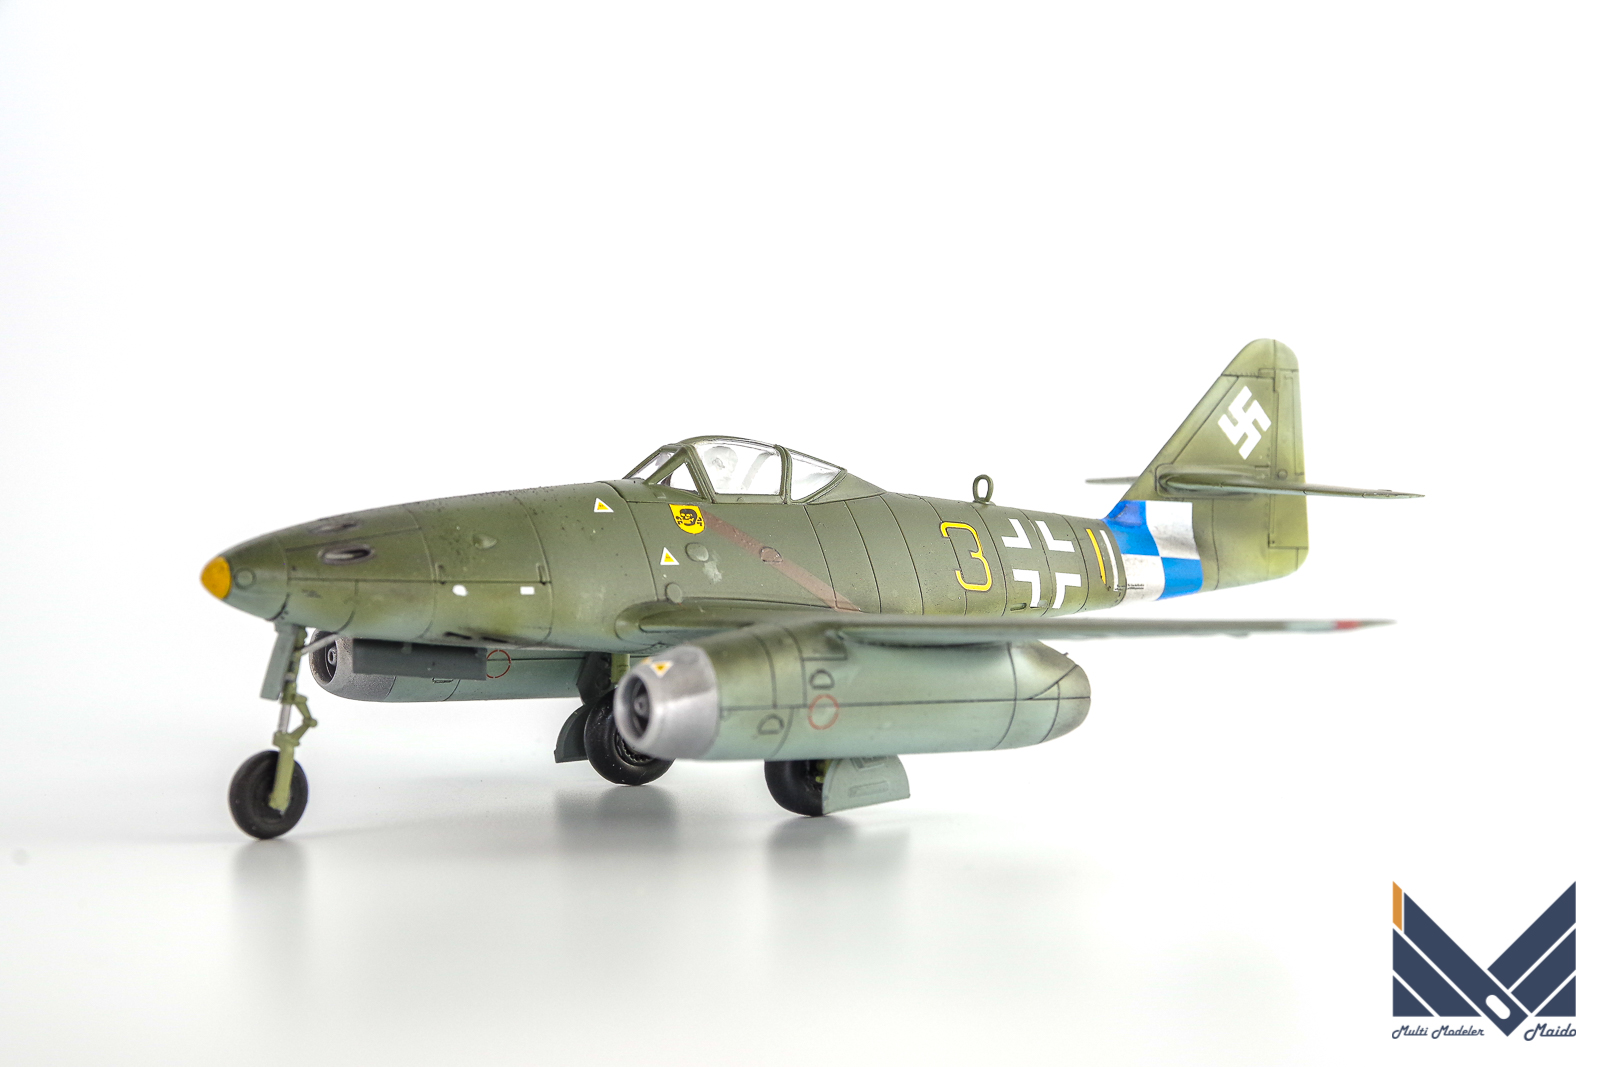 エアフィックス 1/72 Me262A-1A 完成品 AIRFIX 飛行機模型完成品